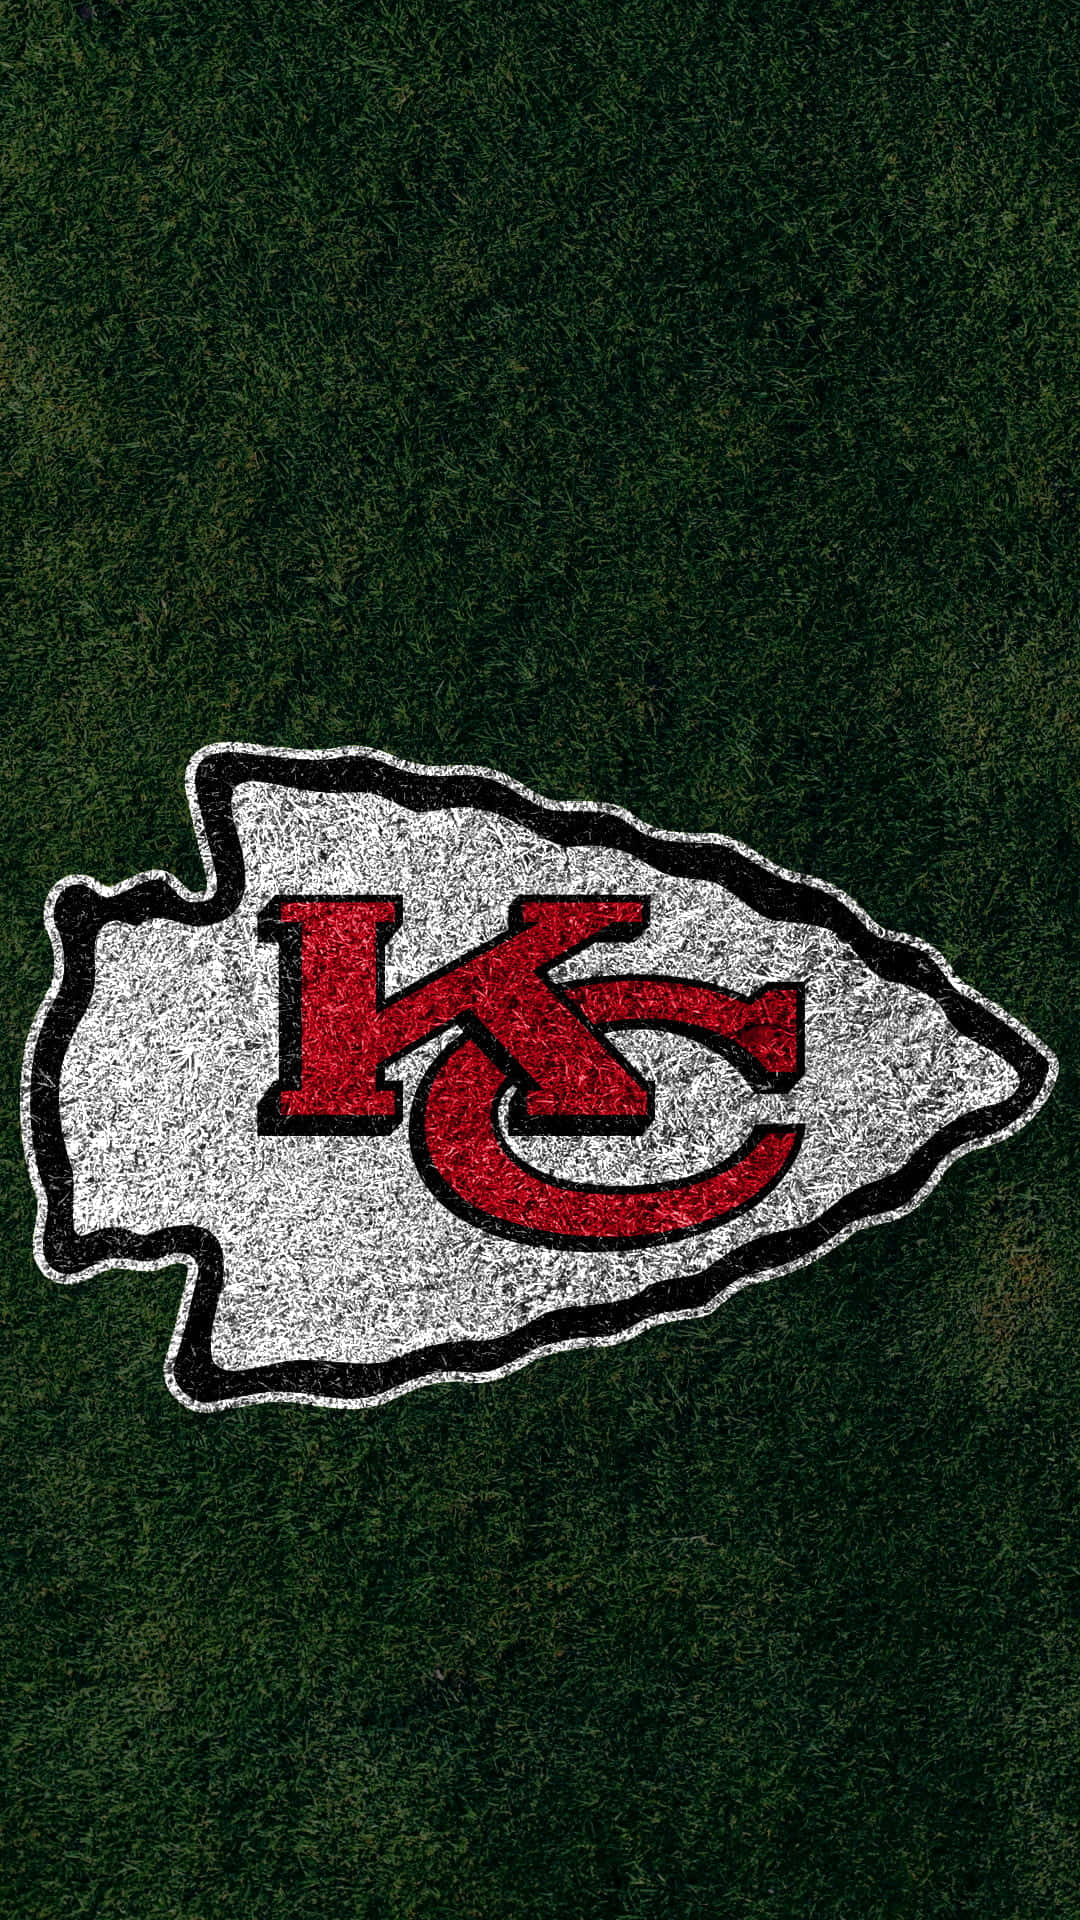 Kansas Chiefs Logo On The Grass Wallpaper